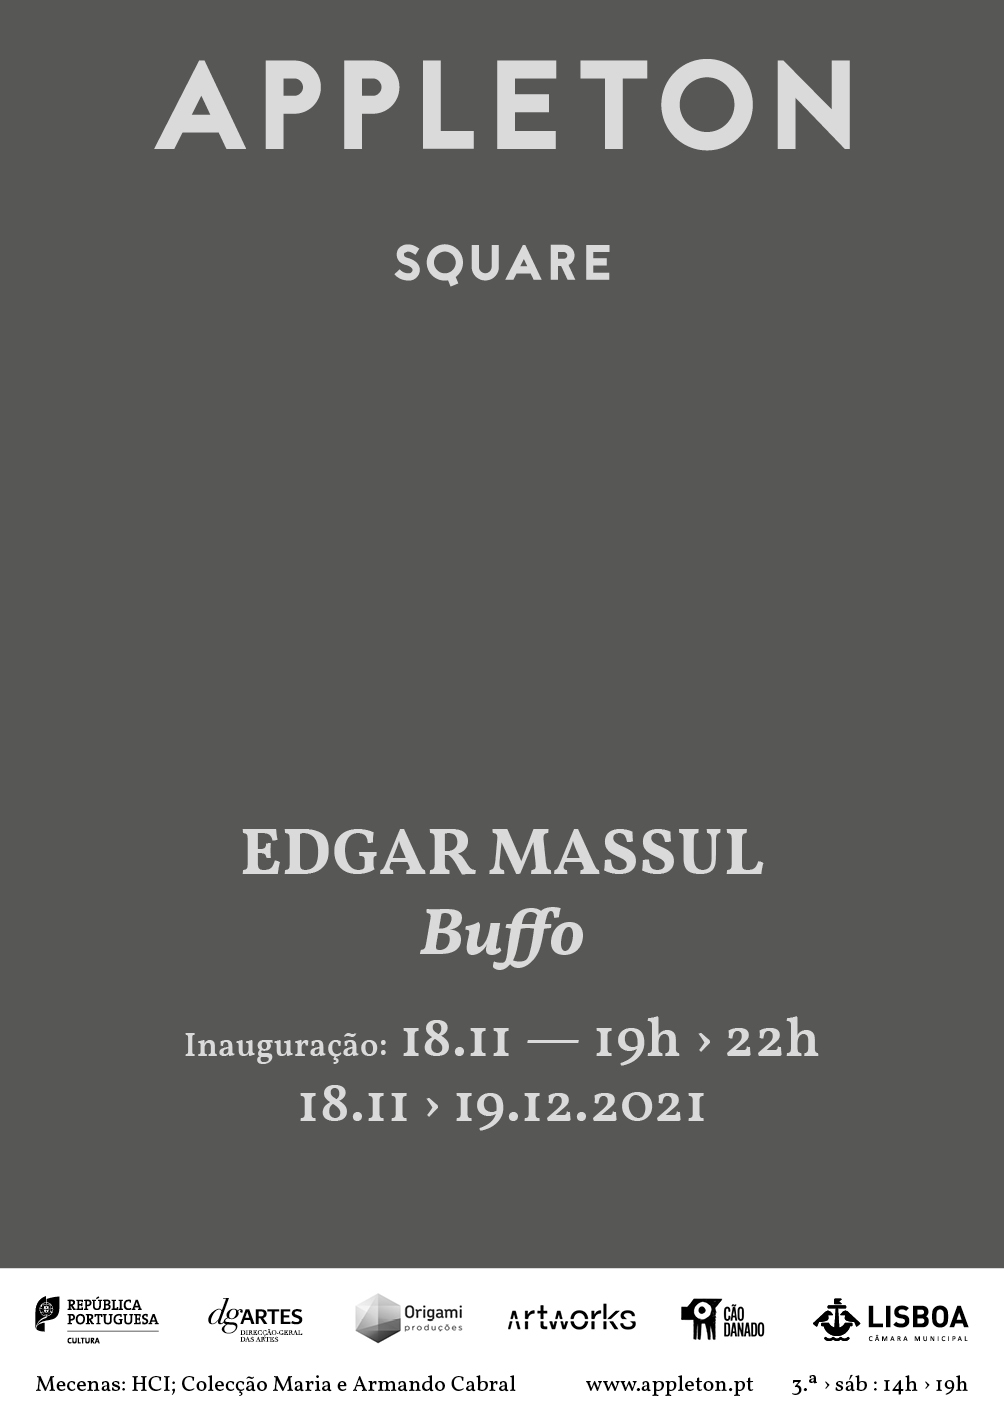 Appleton - Square | Edgar Massul / Buffo | Inauguração 18.11.21 - 19h > 22h